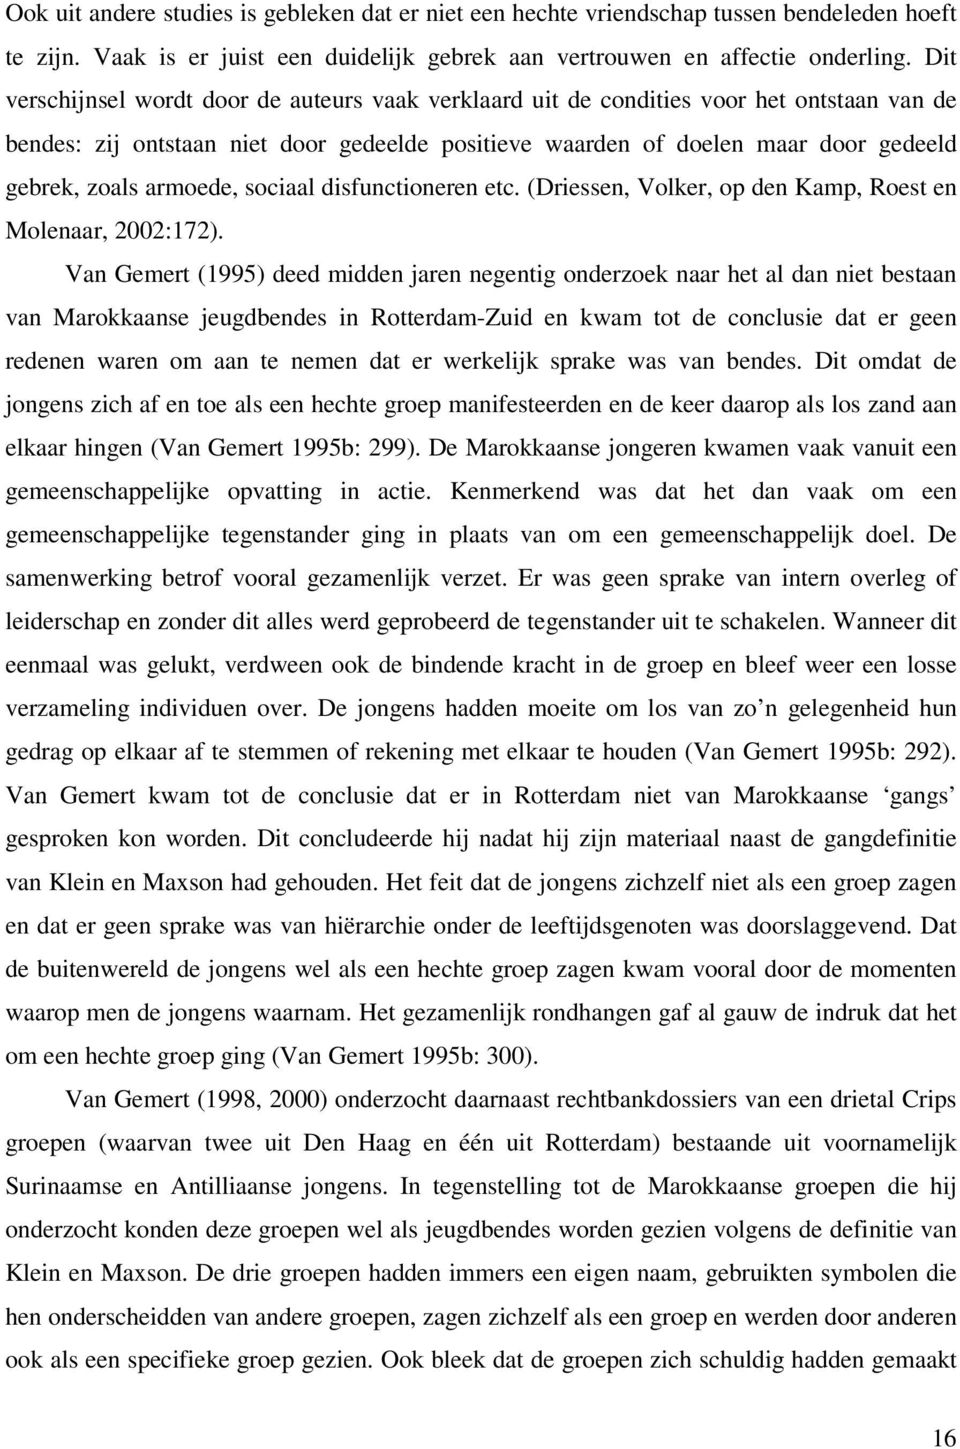 armoede, sociaal disfunctioneren etc. (Driessen, Volker, op den Kamp, Roest en Molenaar, 2002:172).